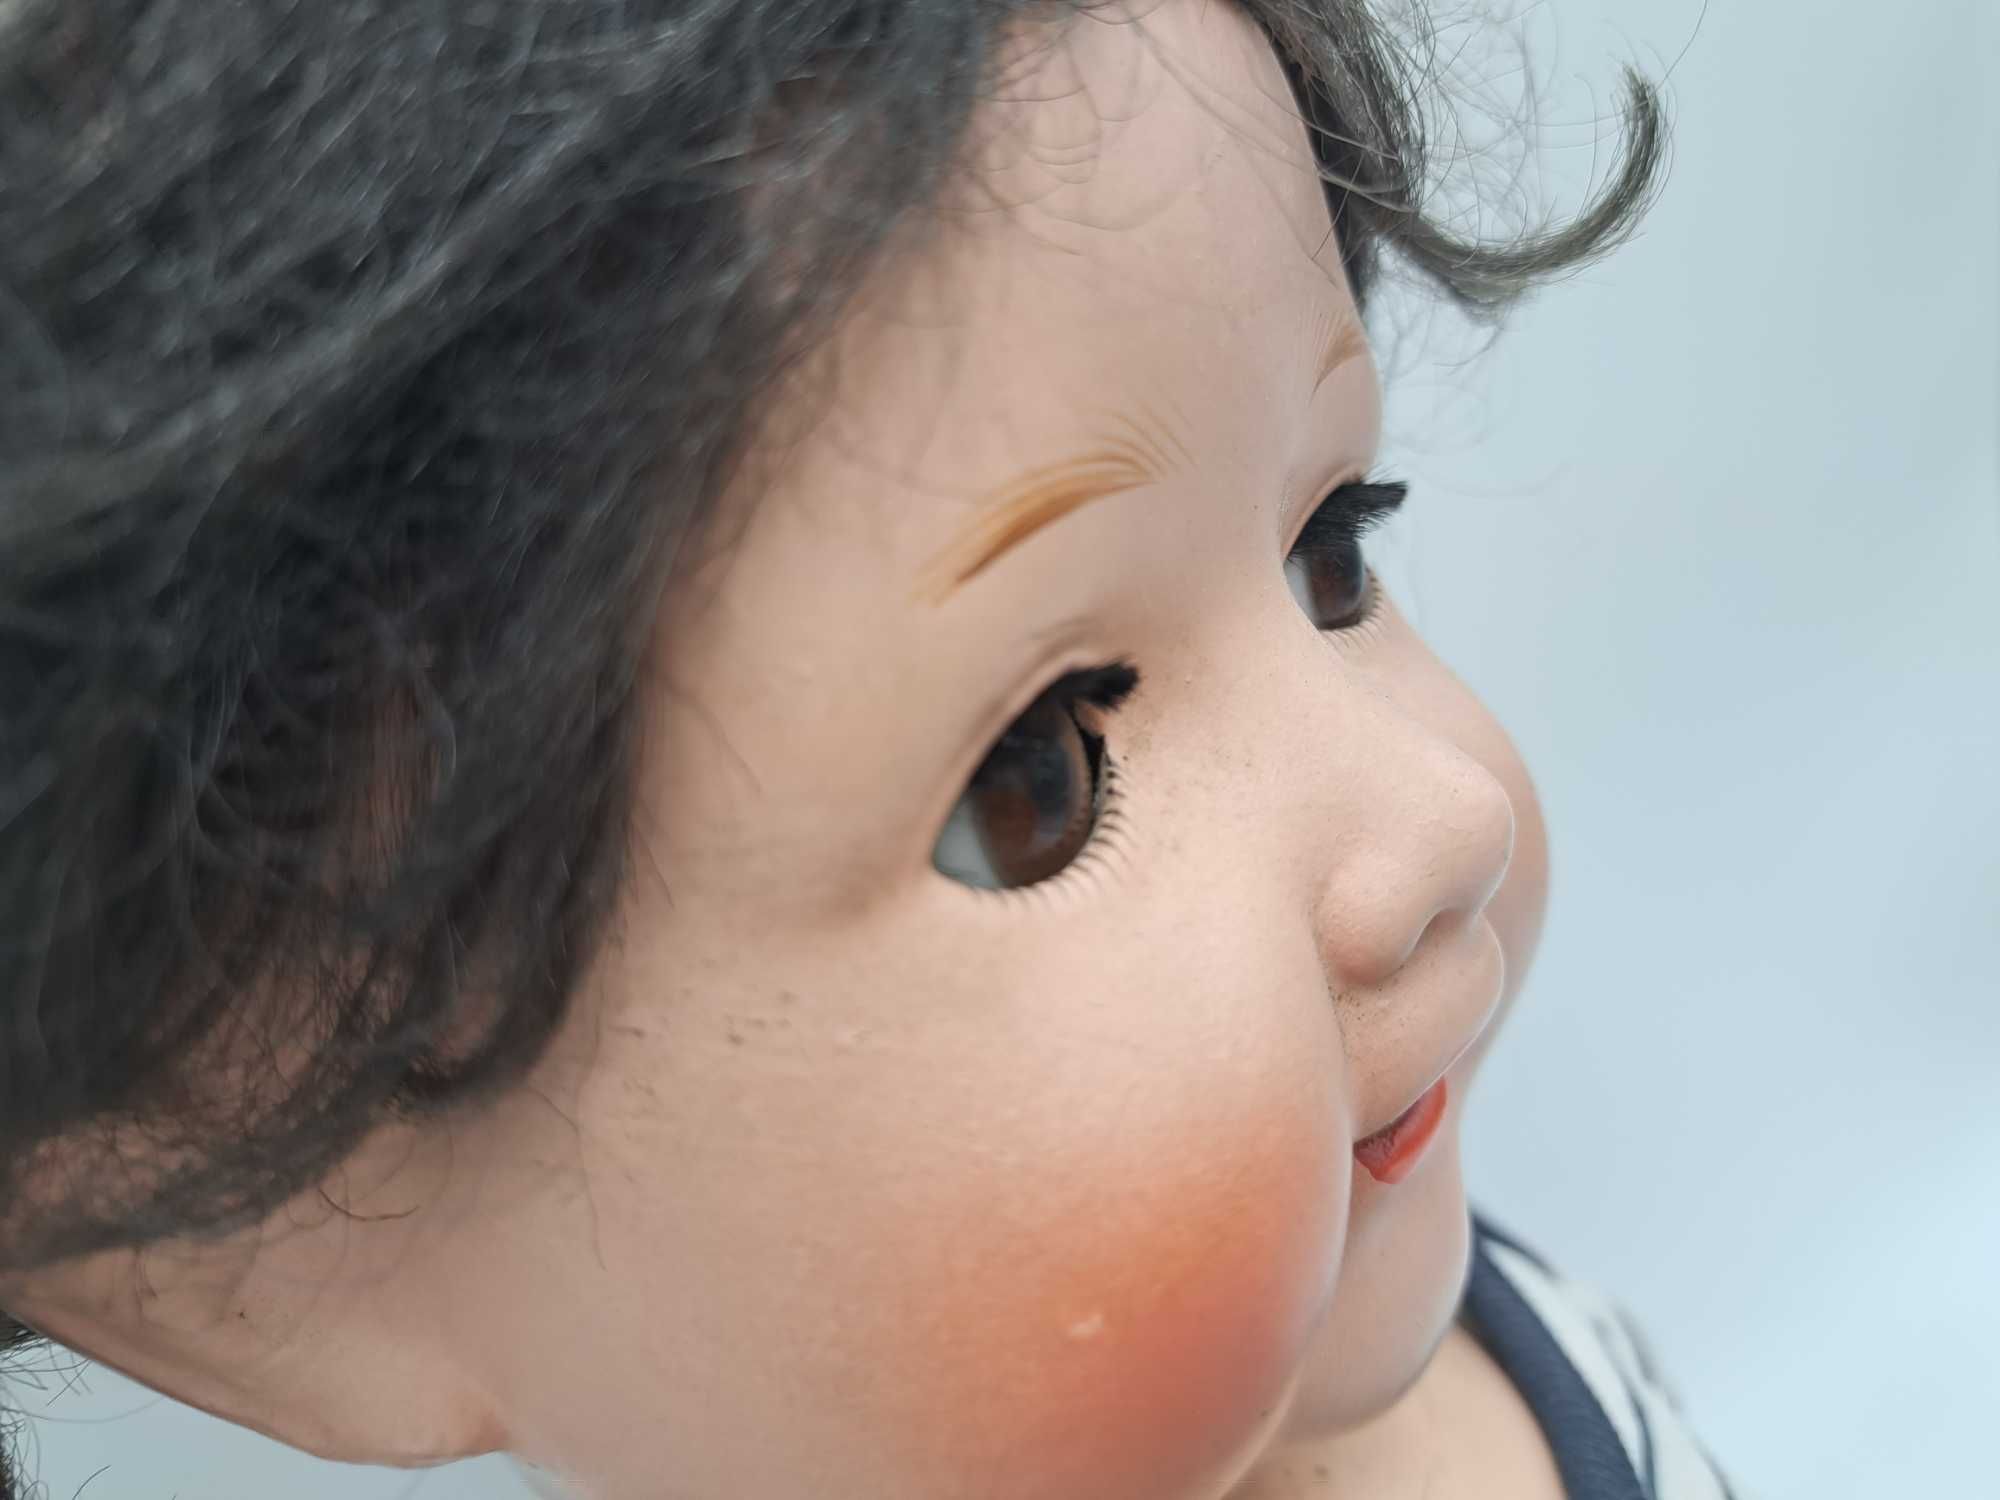 Stara lalka porcelanowa papier mache powieki naturalne rzęsy włosy